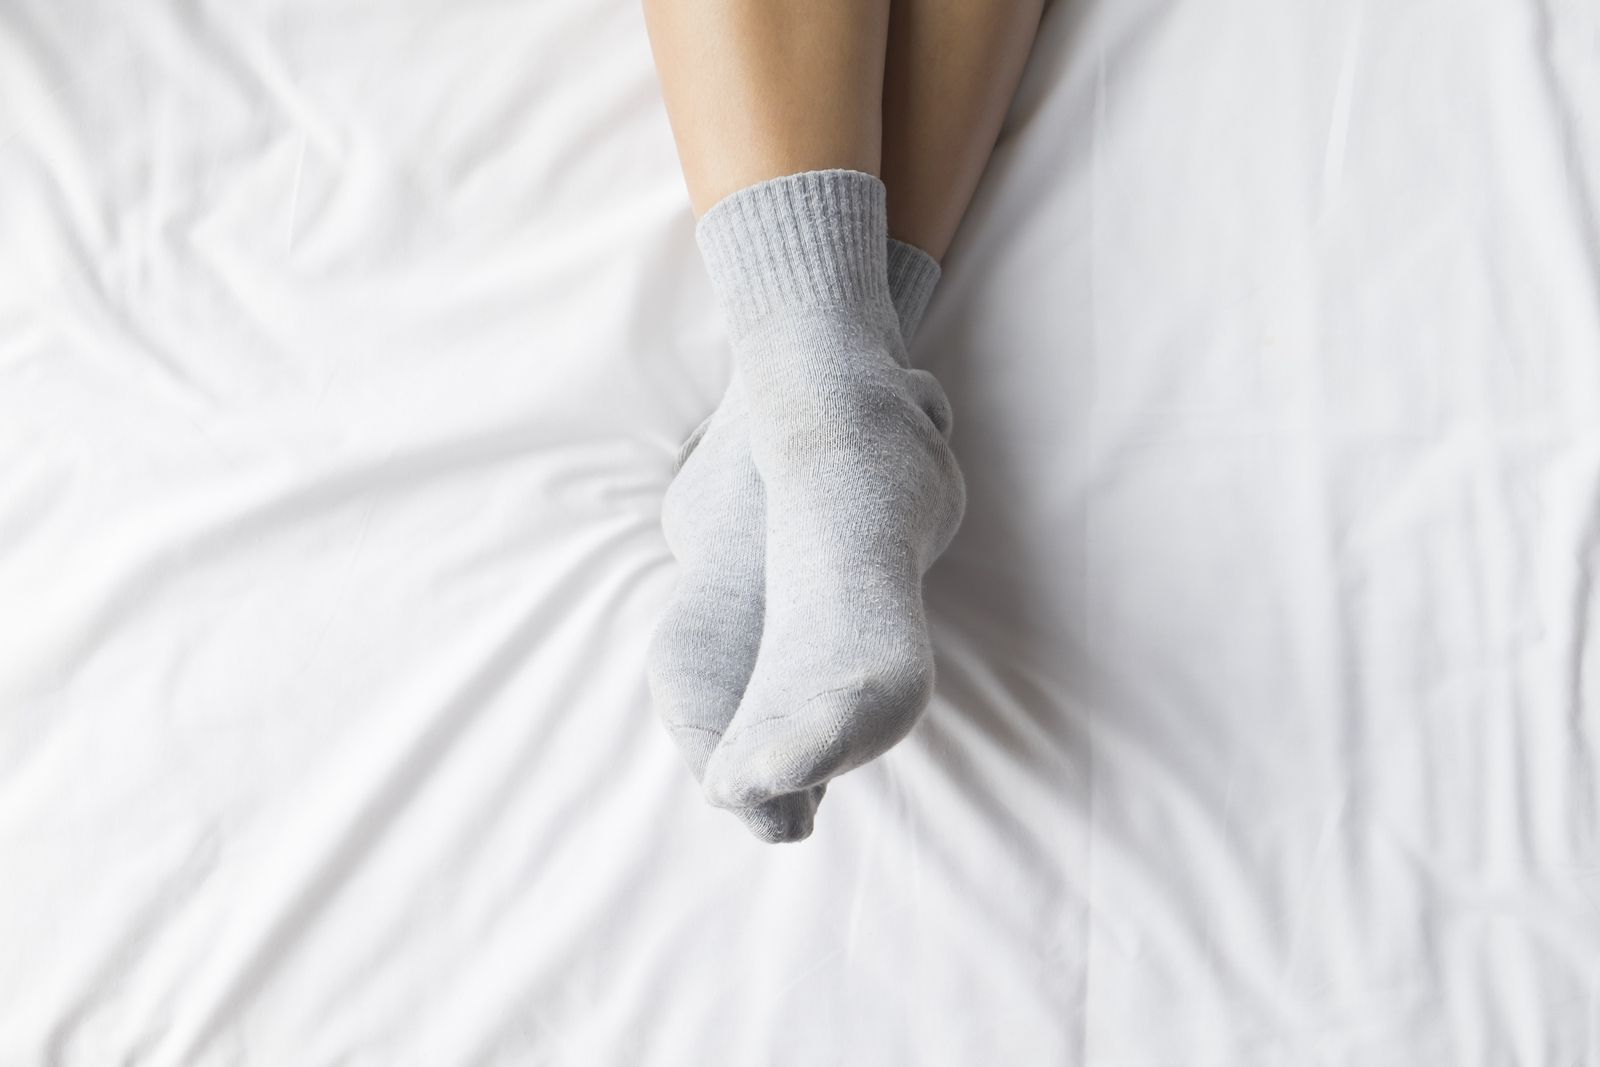 Existen varias posibles causas por las cuales los pies pueden estar fríos.